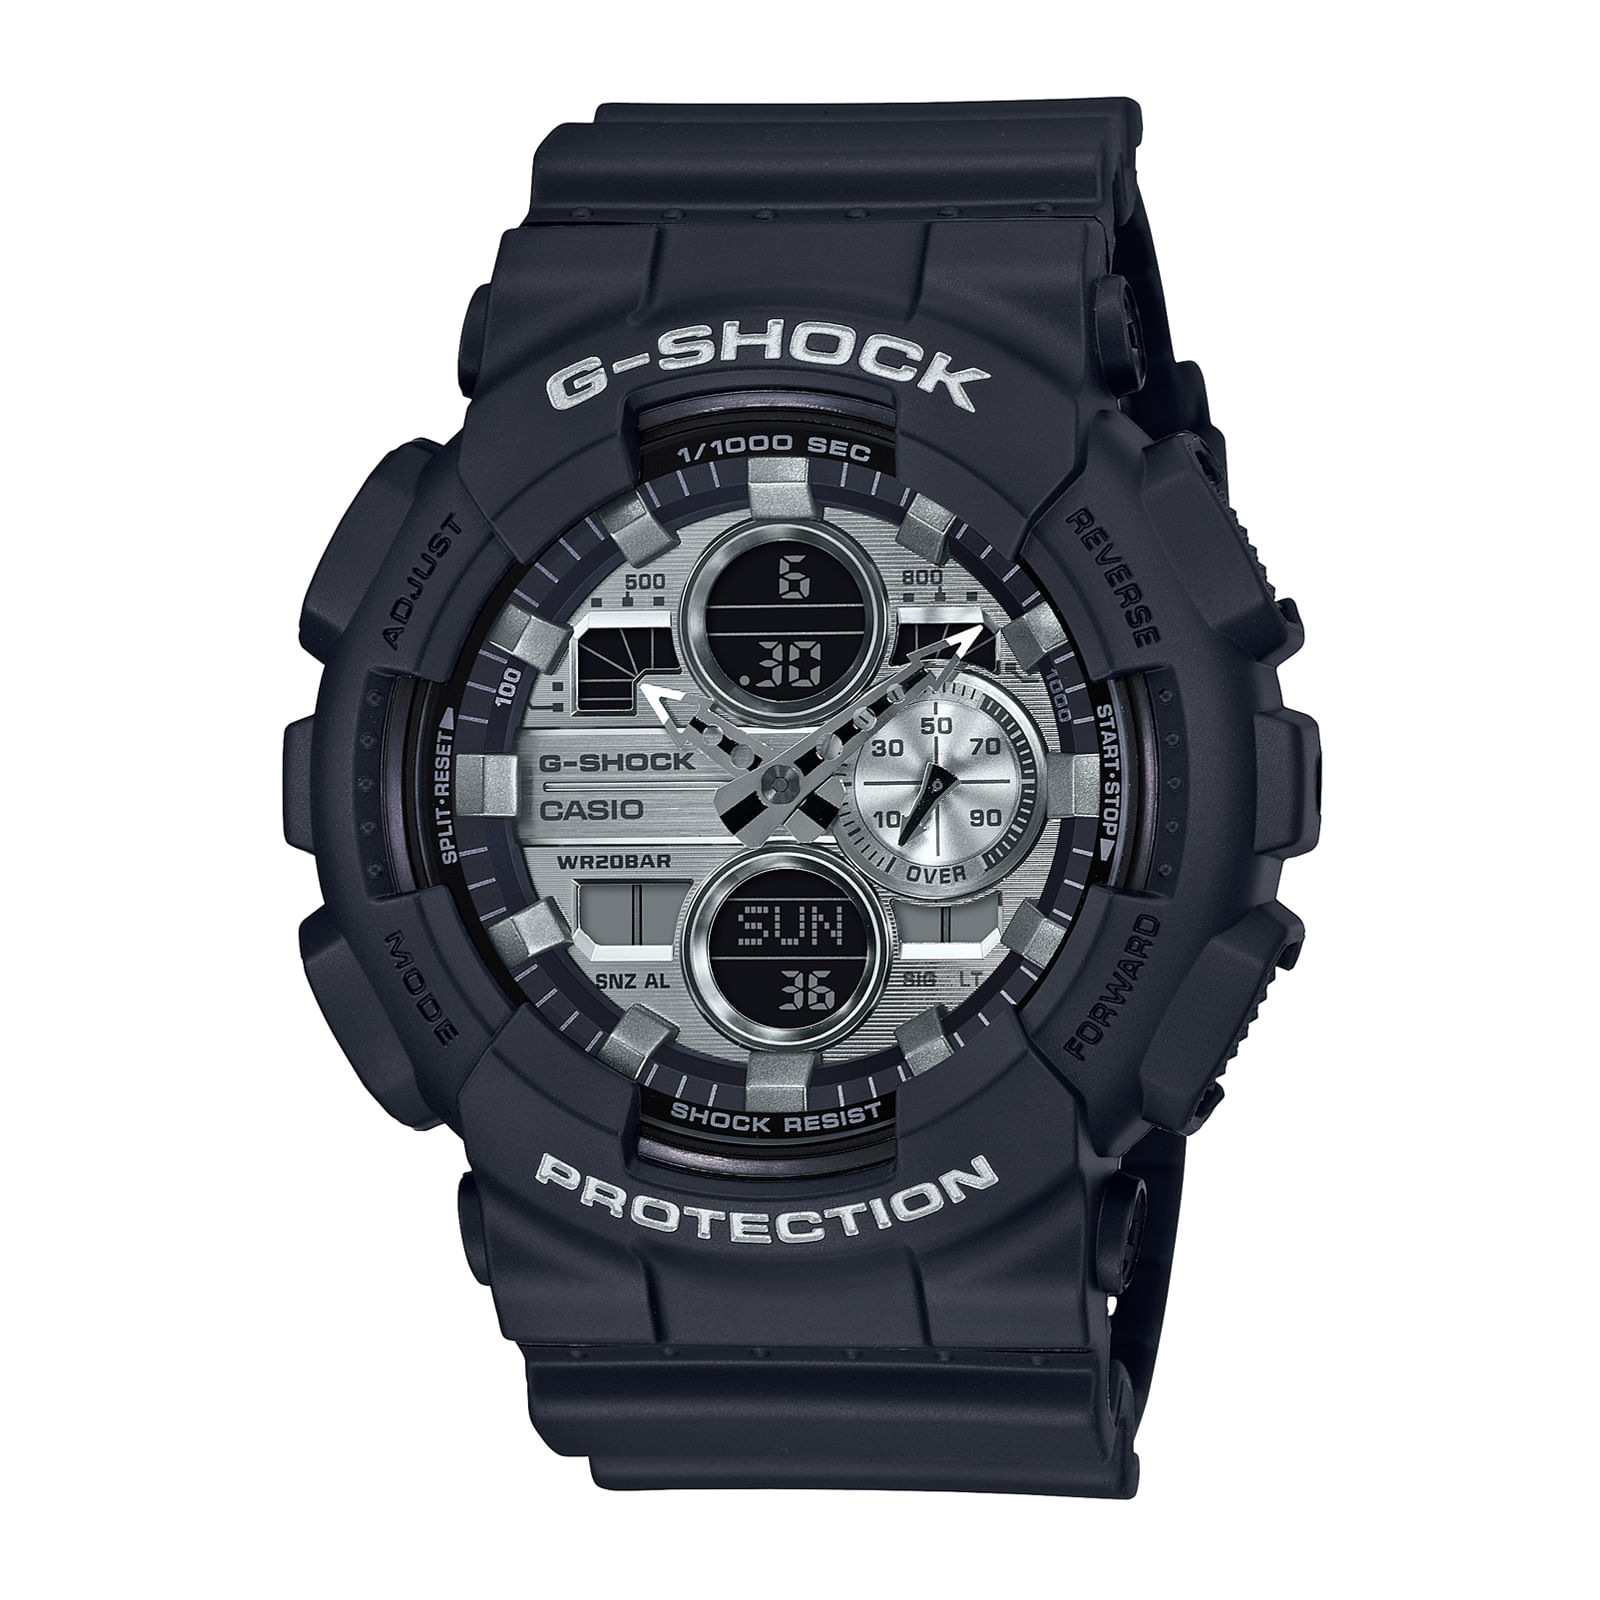 Reloj G-SHOCK GA-140GM-1A1 Resina Hombre Negro